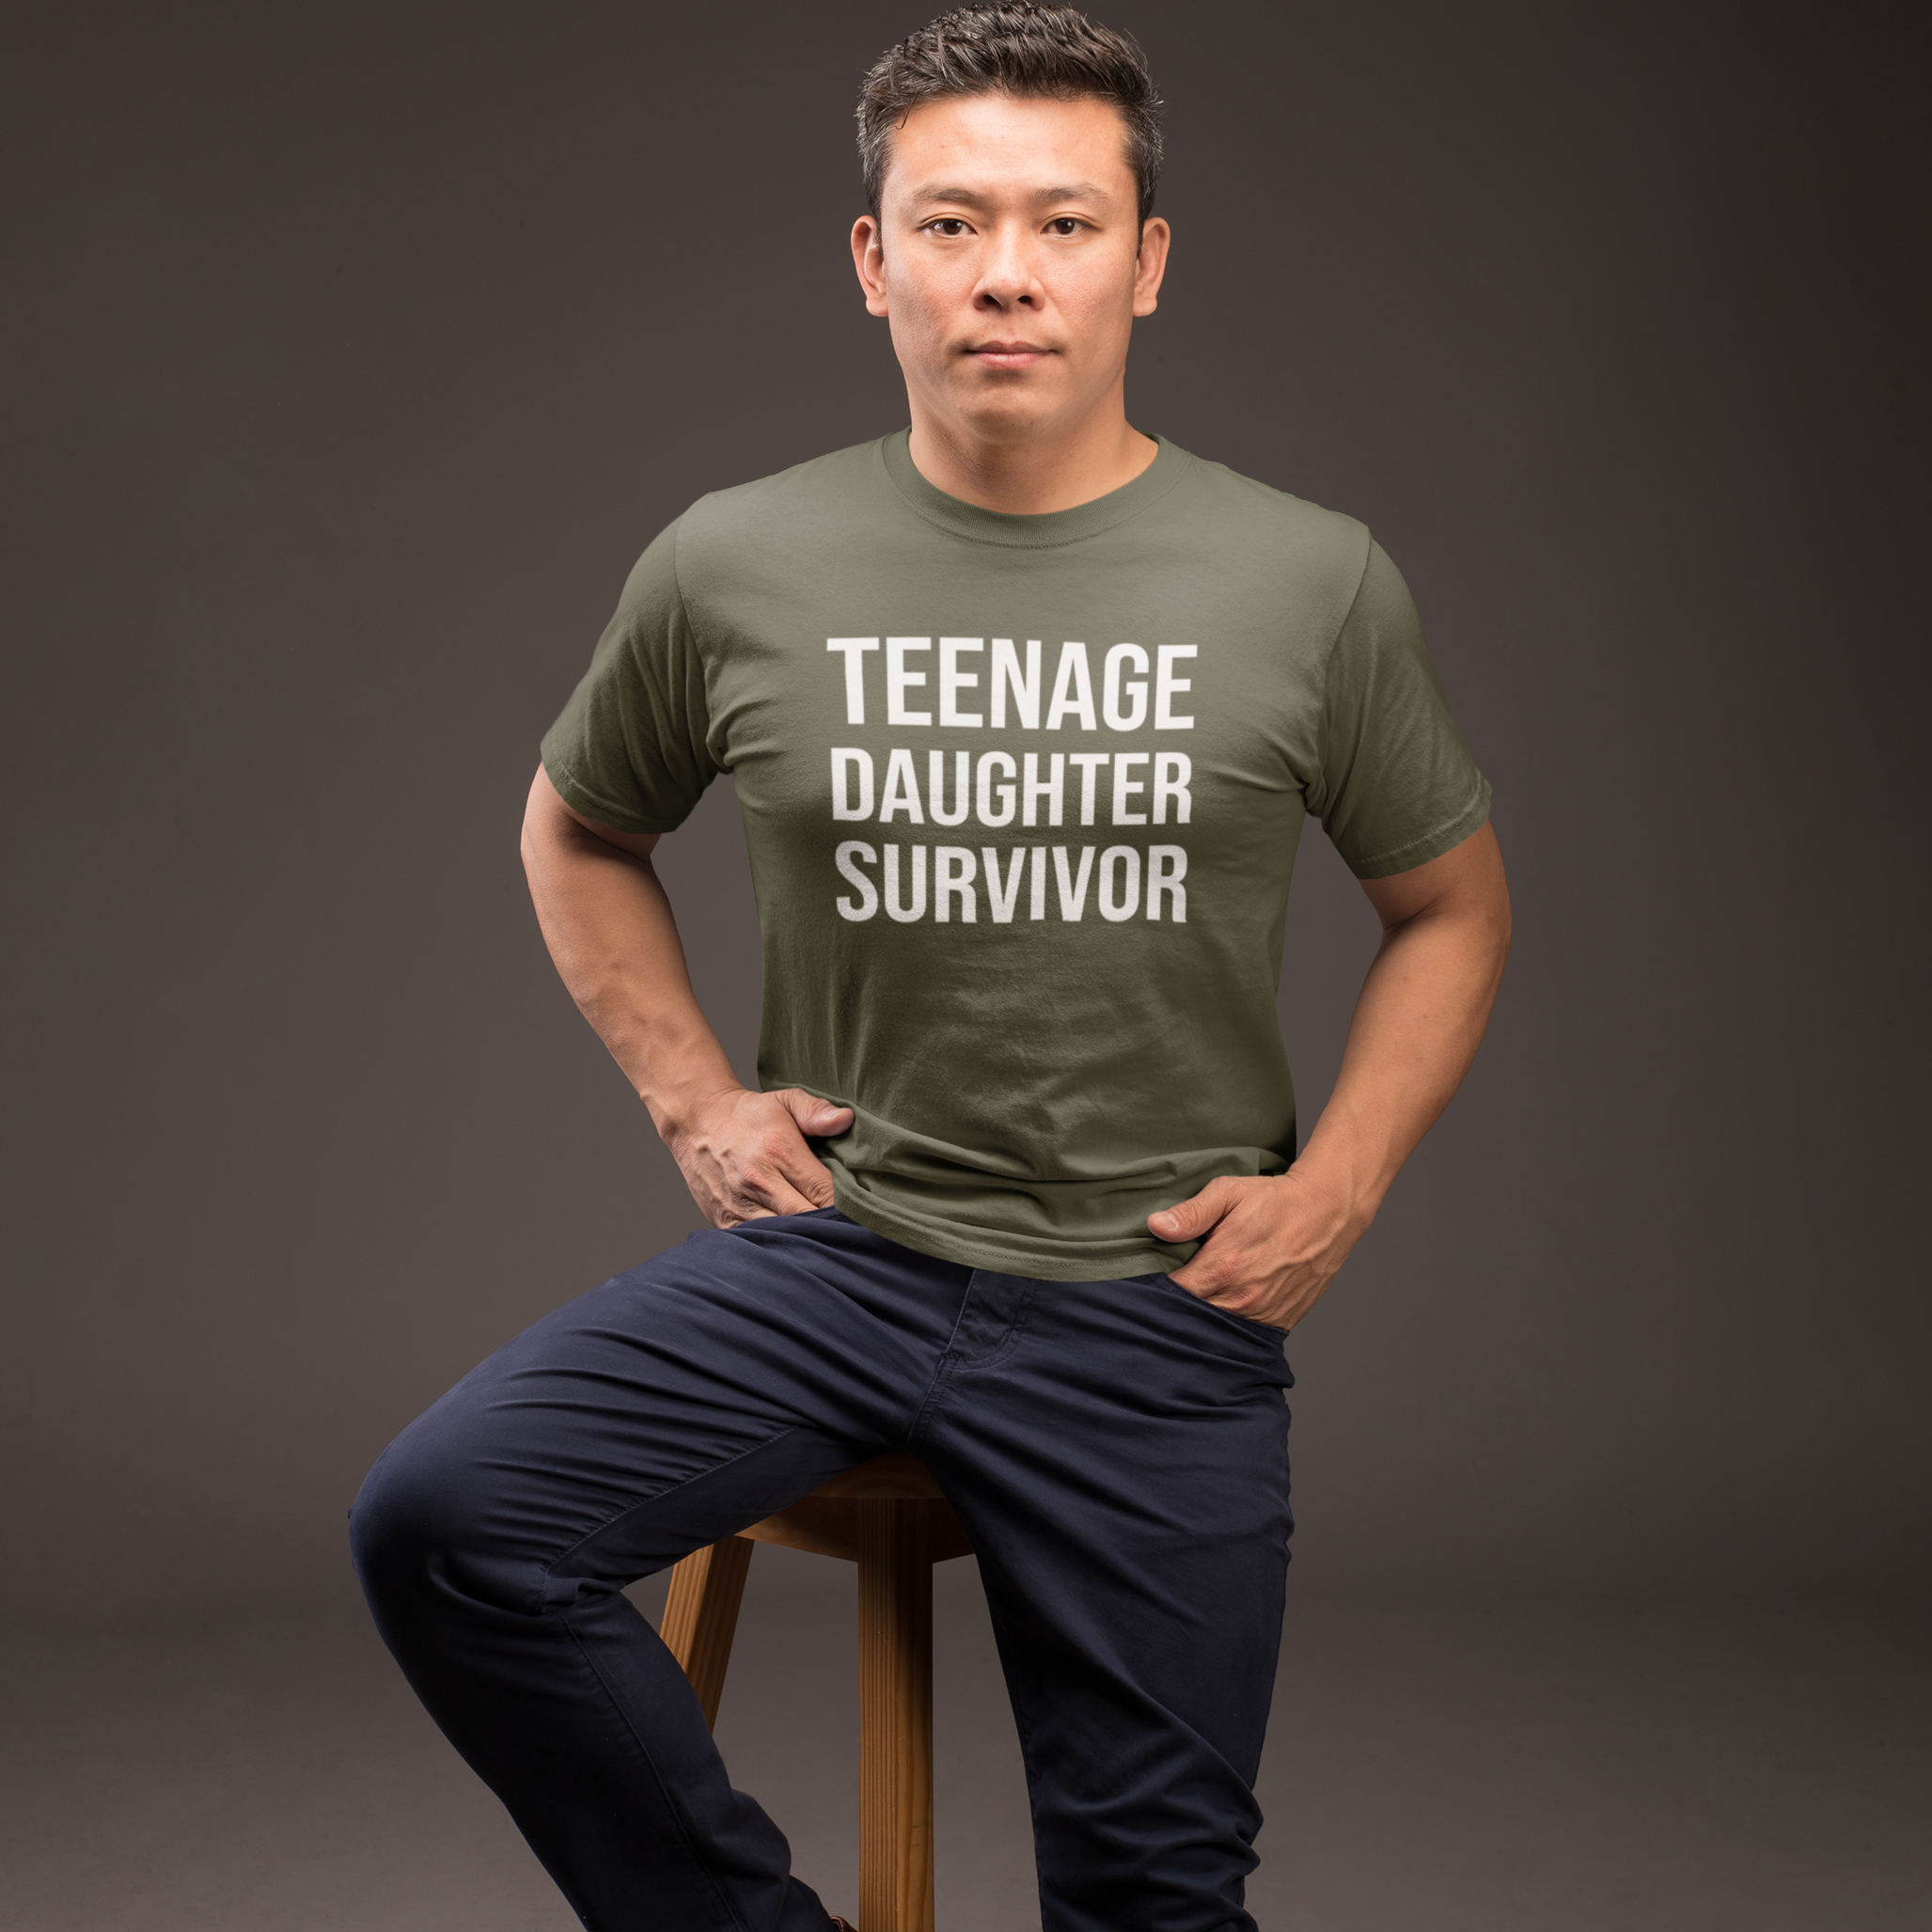 'Teenage daughter survivor' volwassene shirt